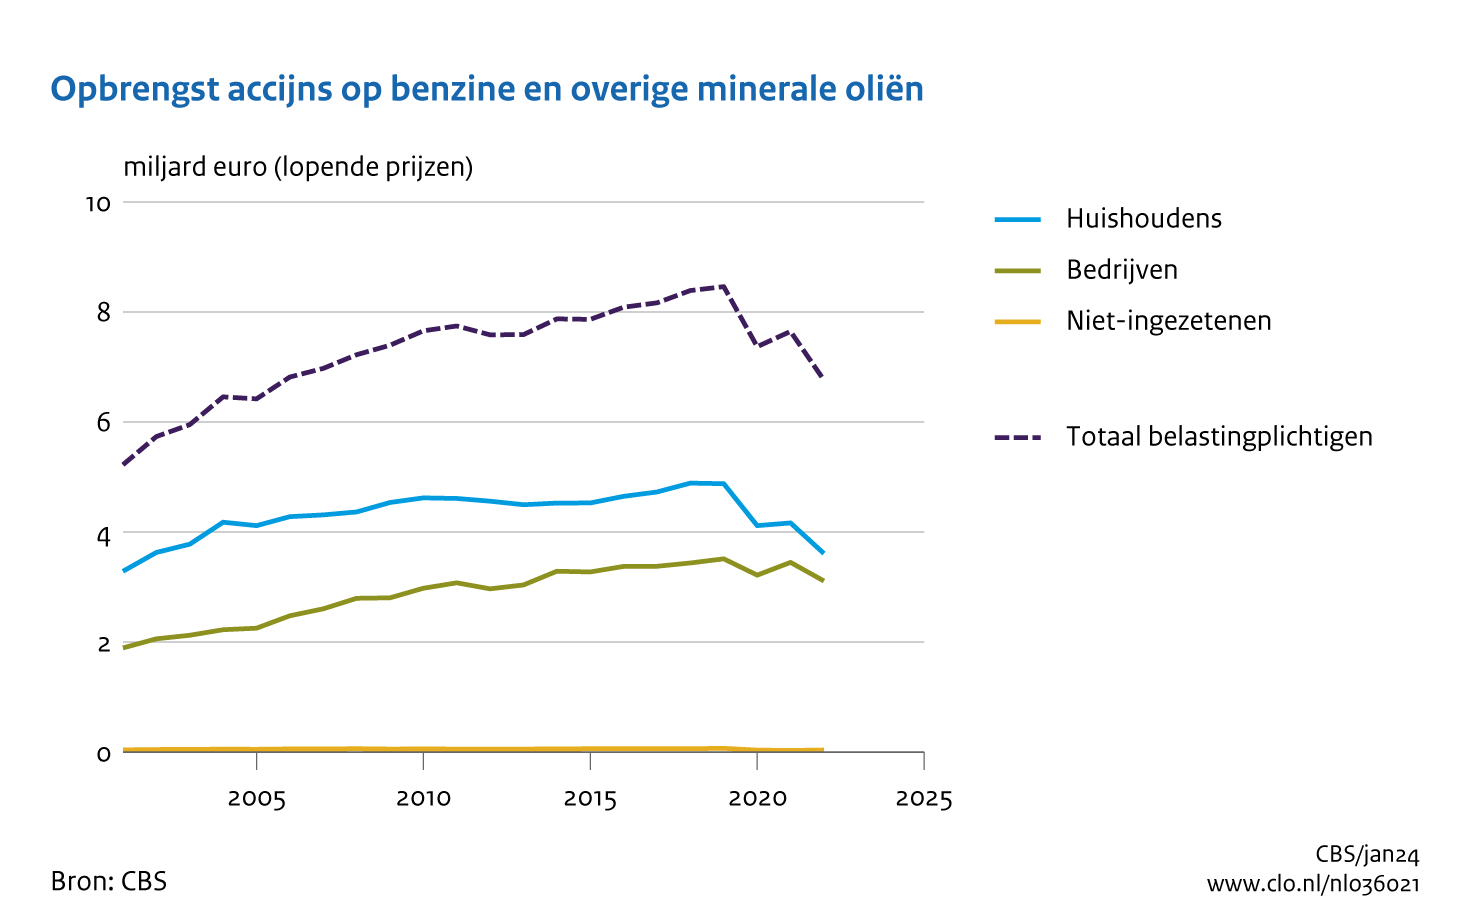 De opbrengst van accijns op benzine en overige minerale oliën bedraagt 7 miljard euro in 2022. Huishoudens en bedrijven hebben ongeveer een even groot aandeel in de opbrengst en deze opbrengst daalde in totaal met 12 procent.